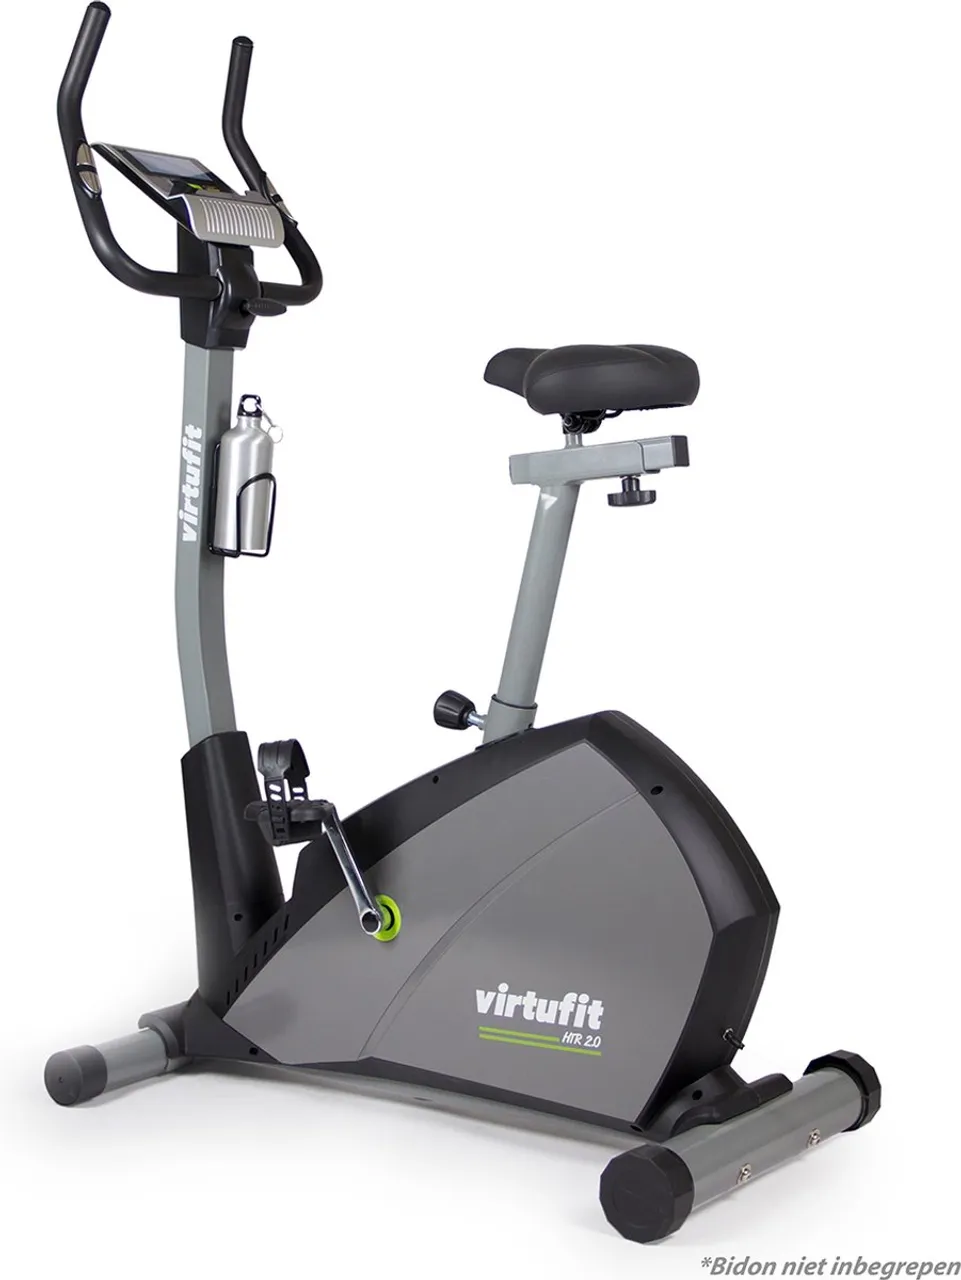 VirtuFit HTR 2.0 Ergometer hometrainer - Fitness fiets - 24 programma's - Lichtgewicht binnenfiets - Belastbaar tot 150 KG